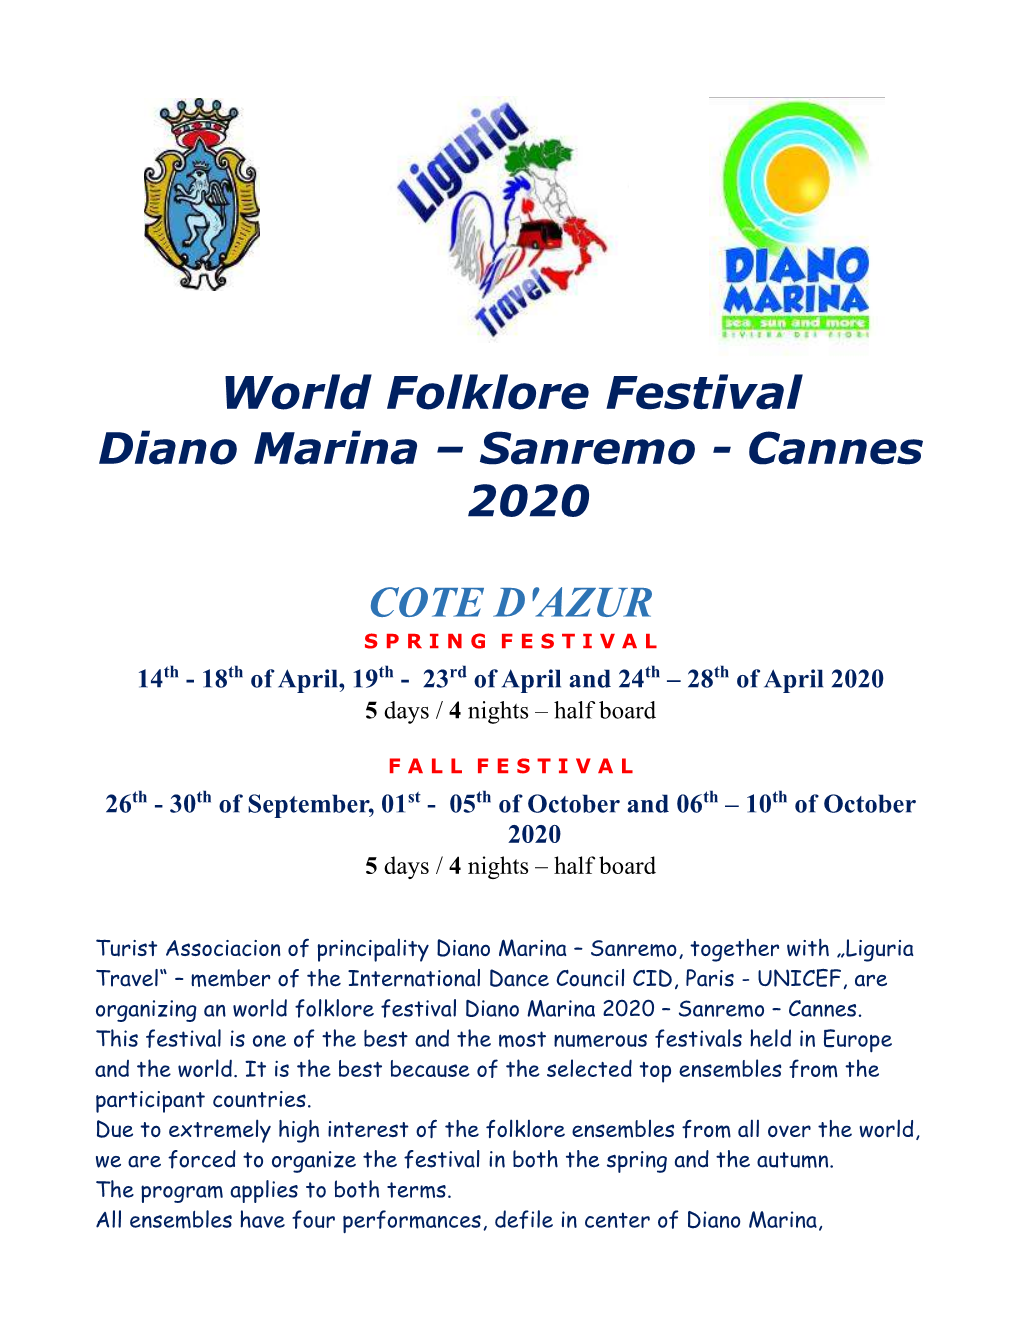 World Folklore Festival Diano Marina – Sanremo - Cannes 2020